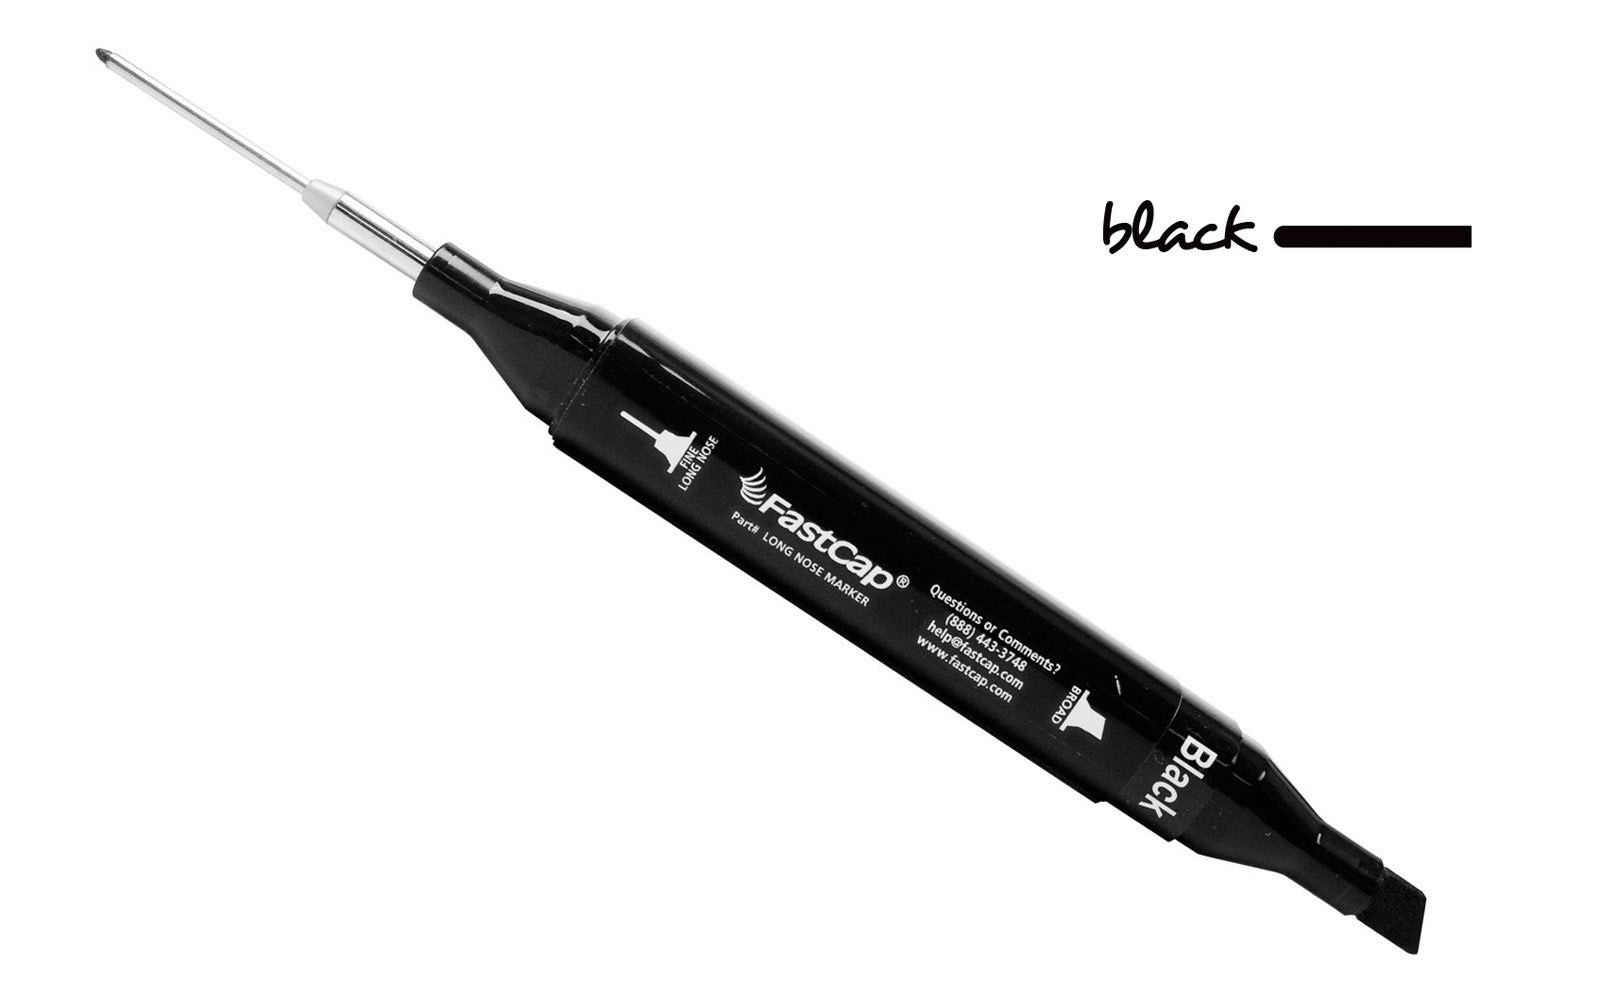 FastCap Long Nose Marker ~ Black Color ~ 1-1/8" long fine point tip for marking